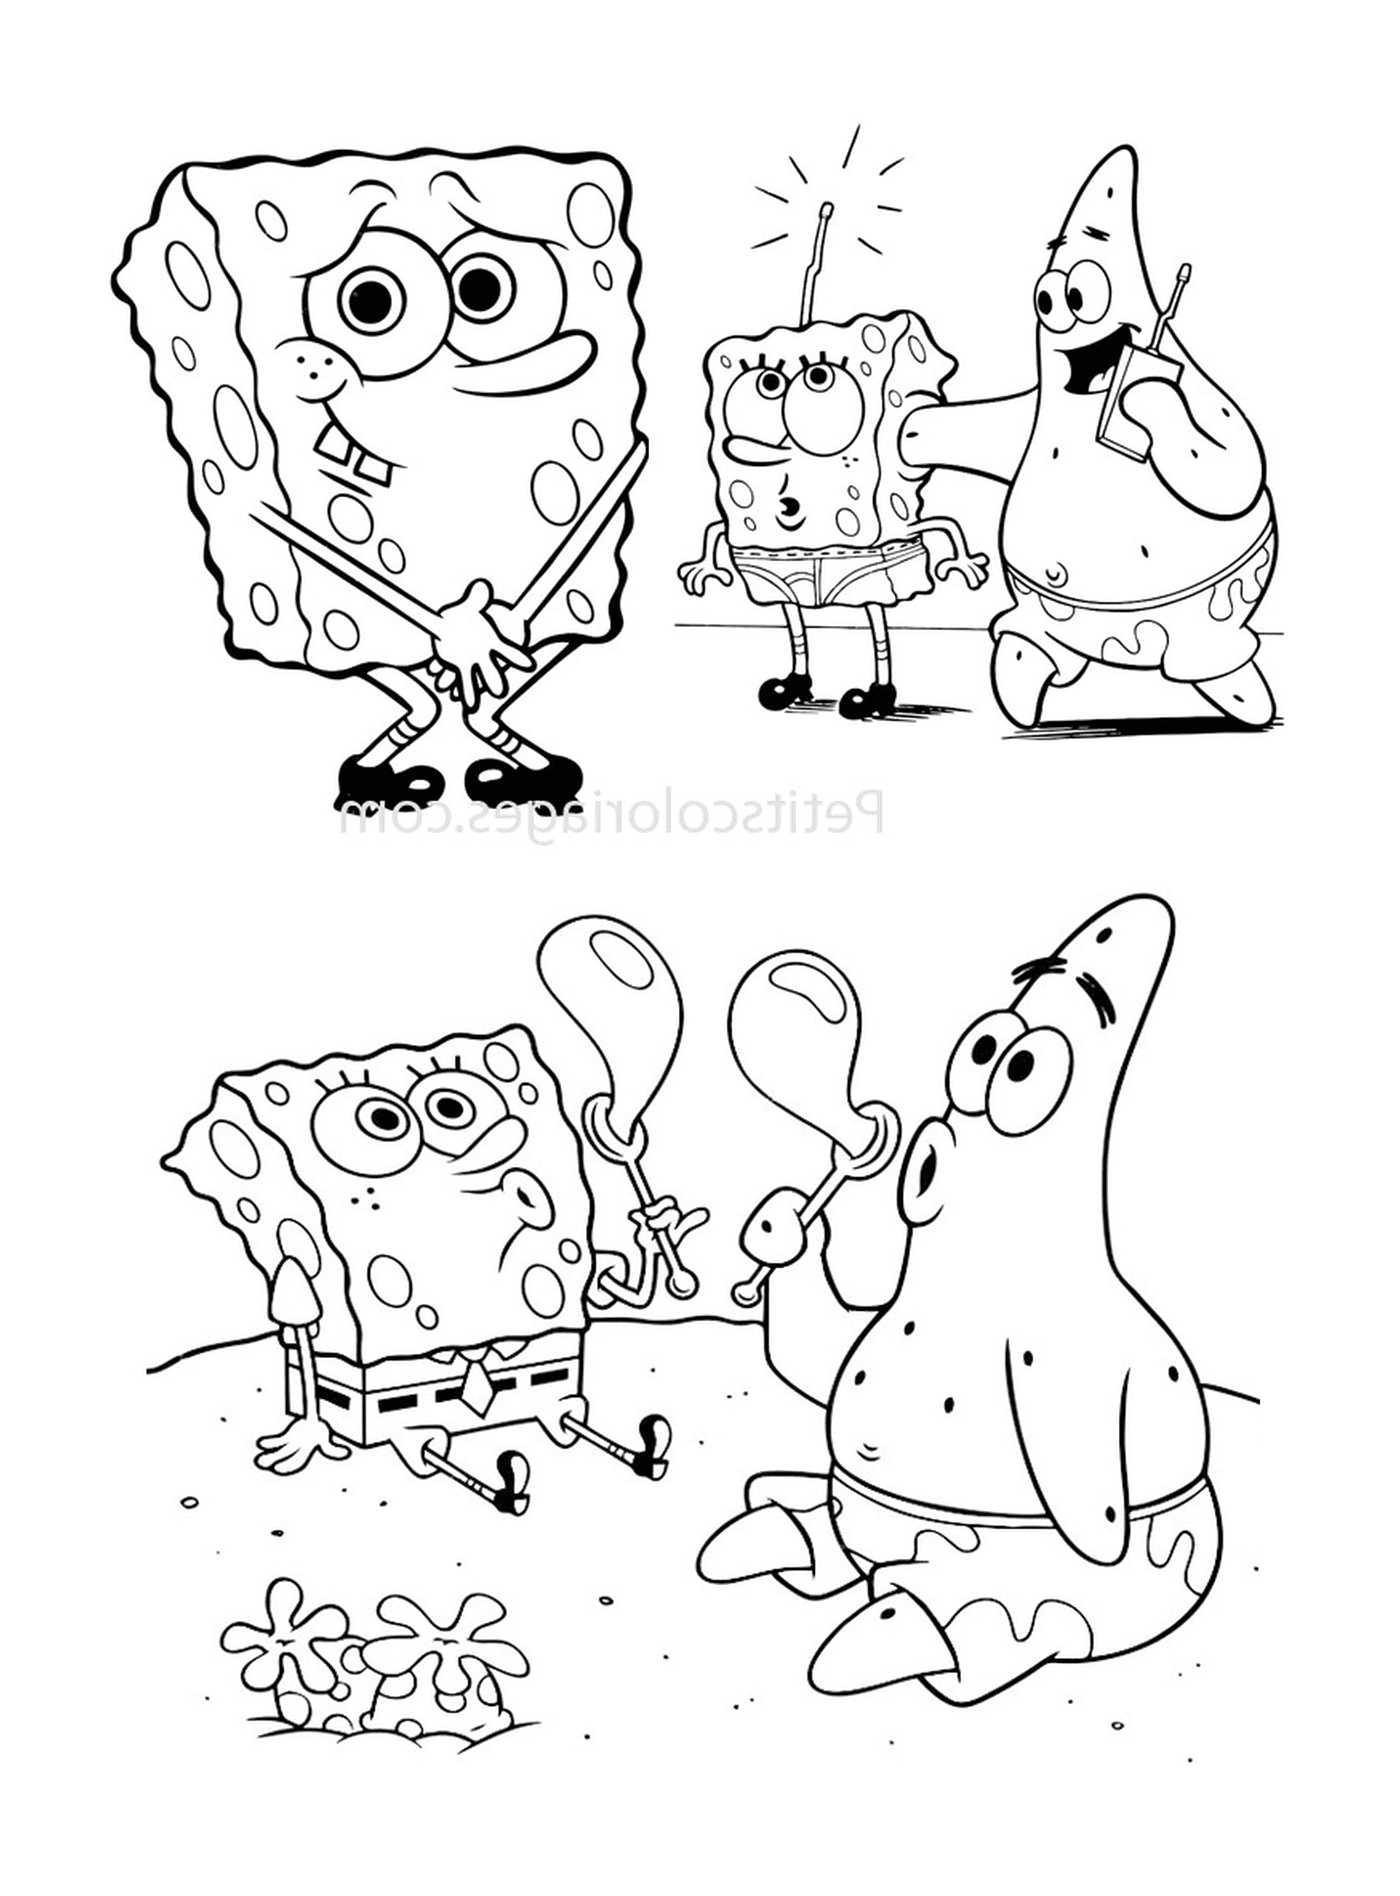  Un gruppo di personaggi di Bob the Sponge 